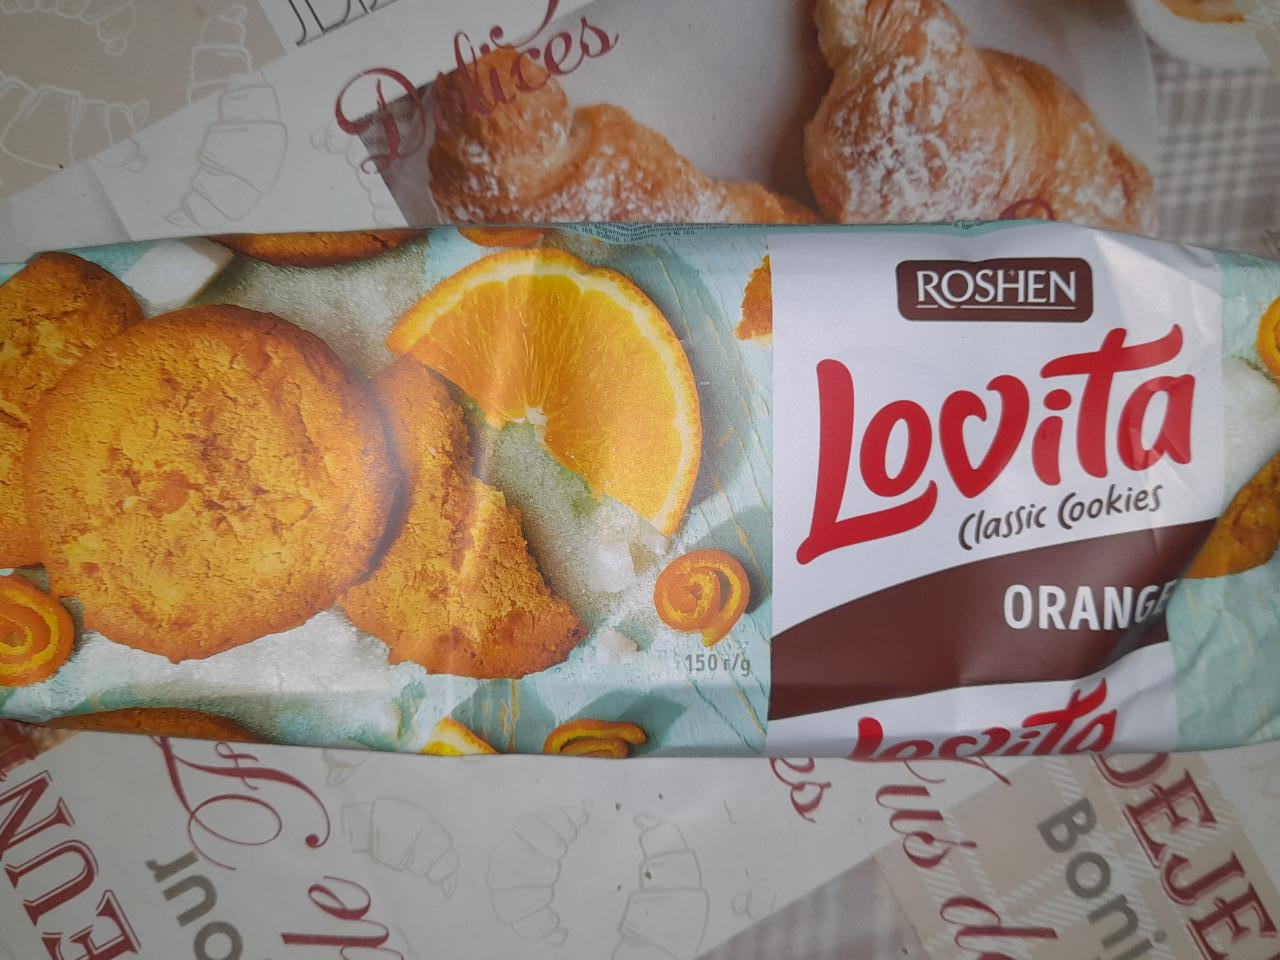 Fotografie - Lovita classic cookie Orange Roshen